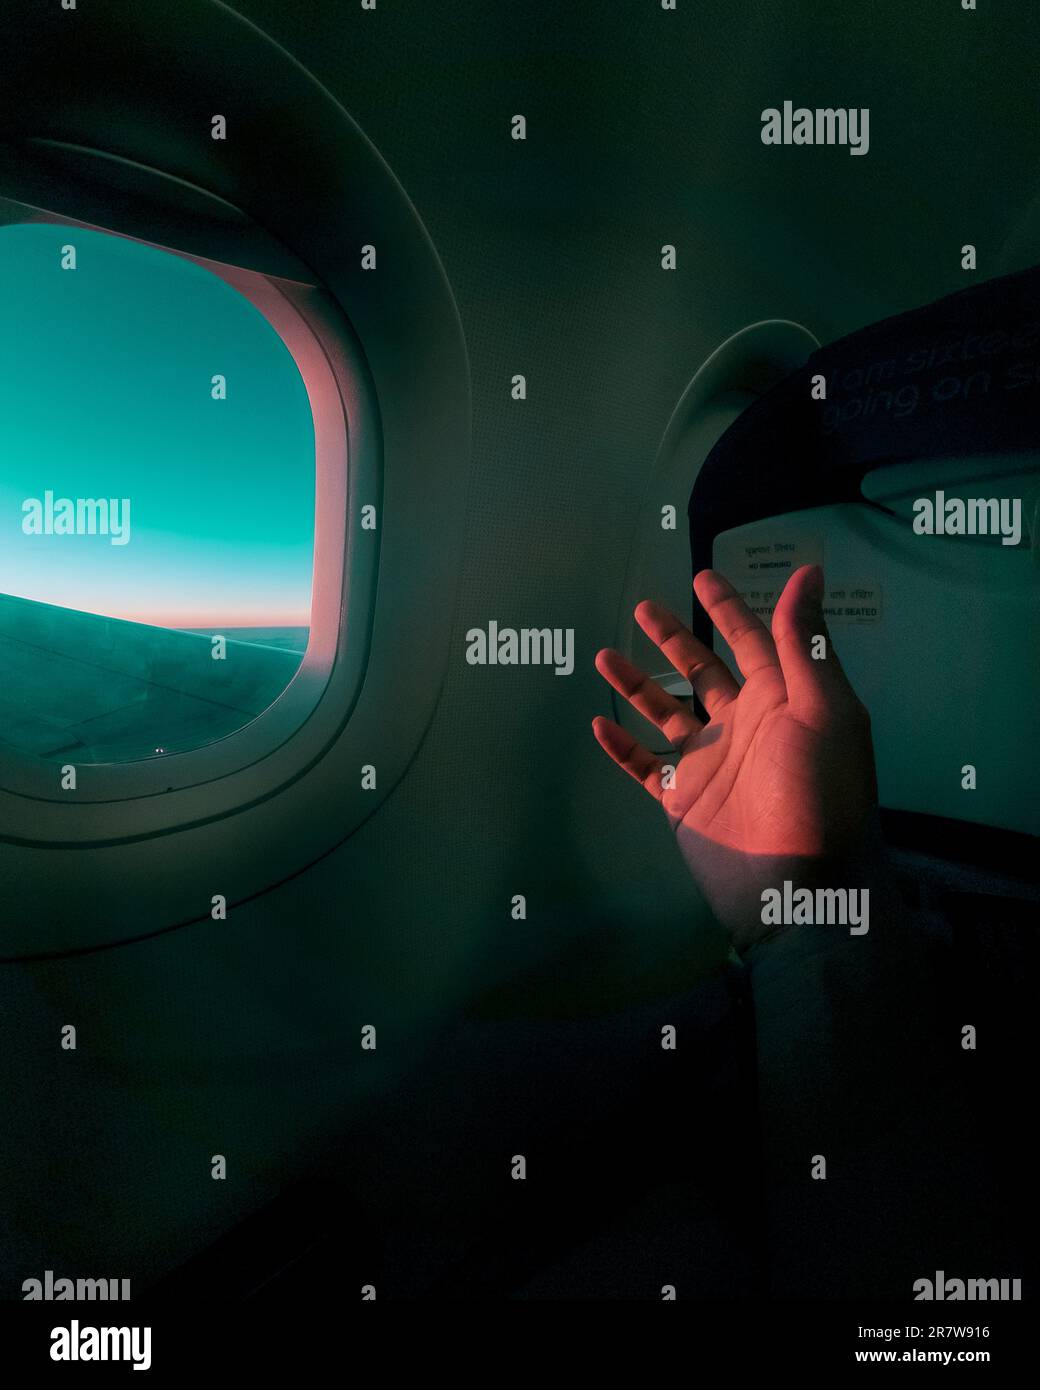 Une main humaine s'étire d'une fenêtre d'avion Banque D'Images